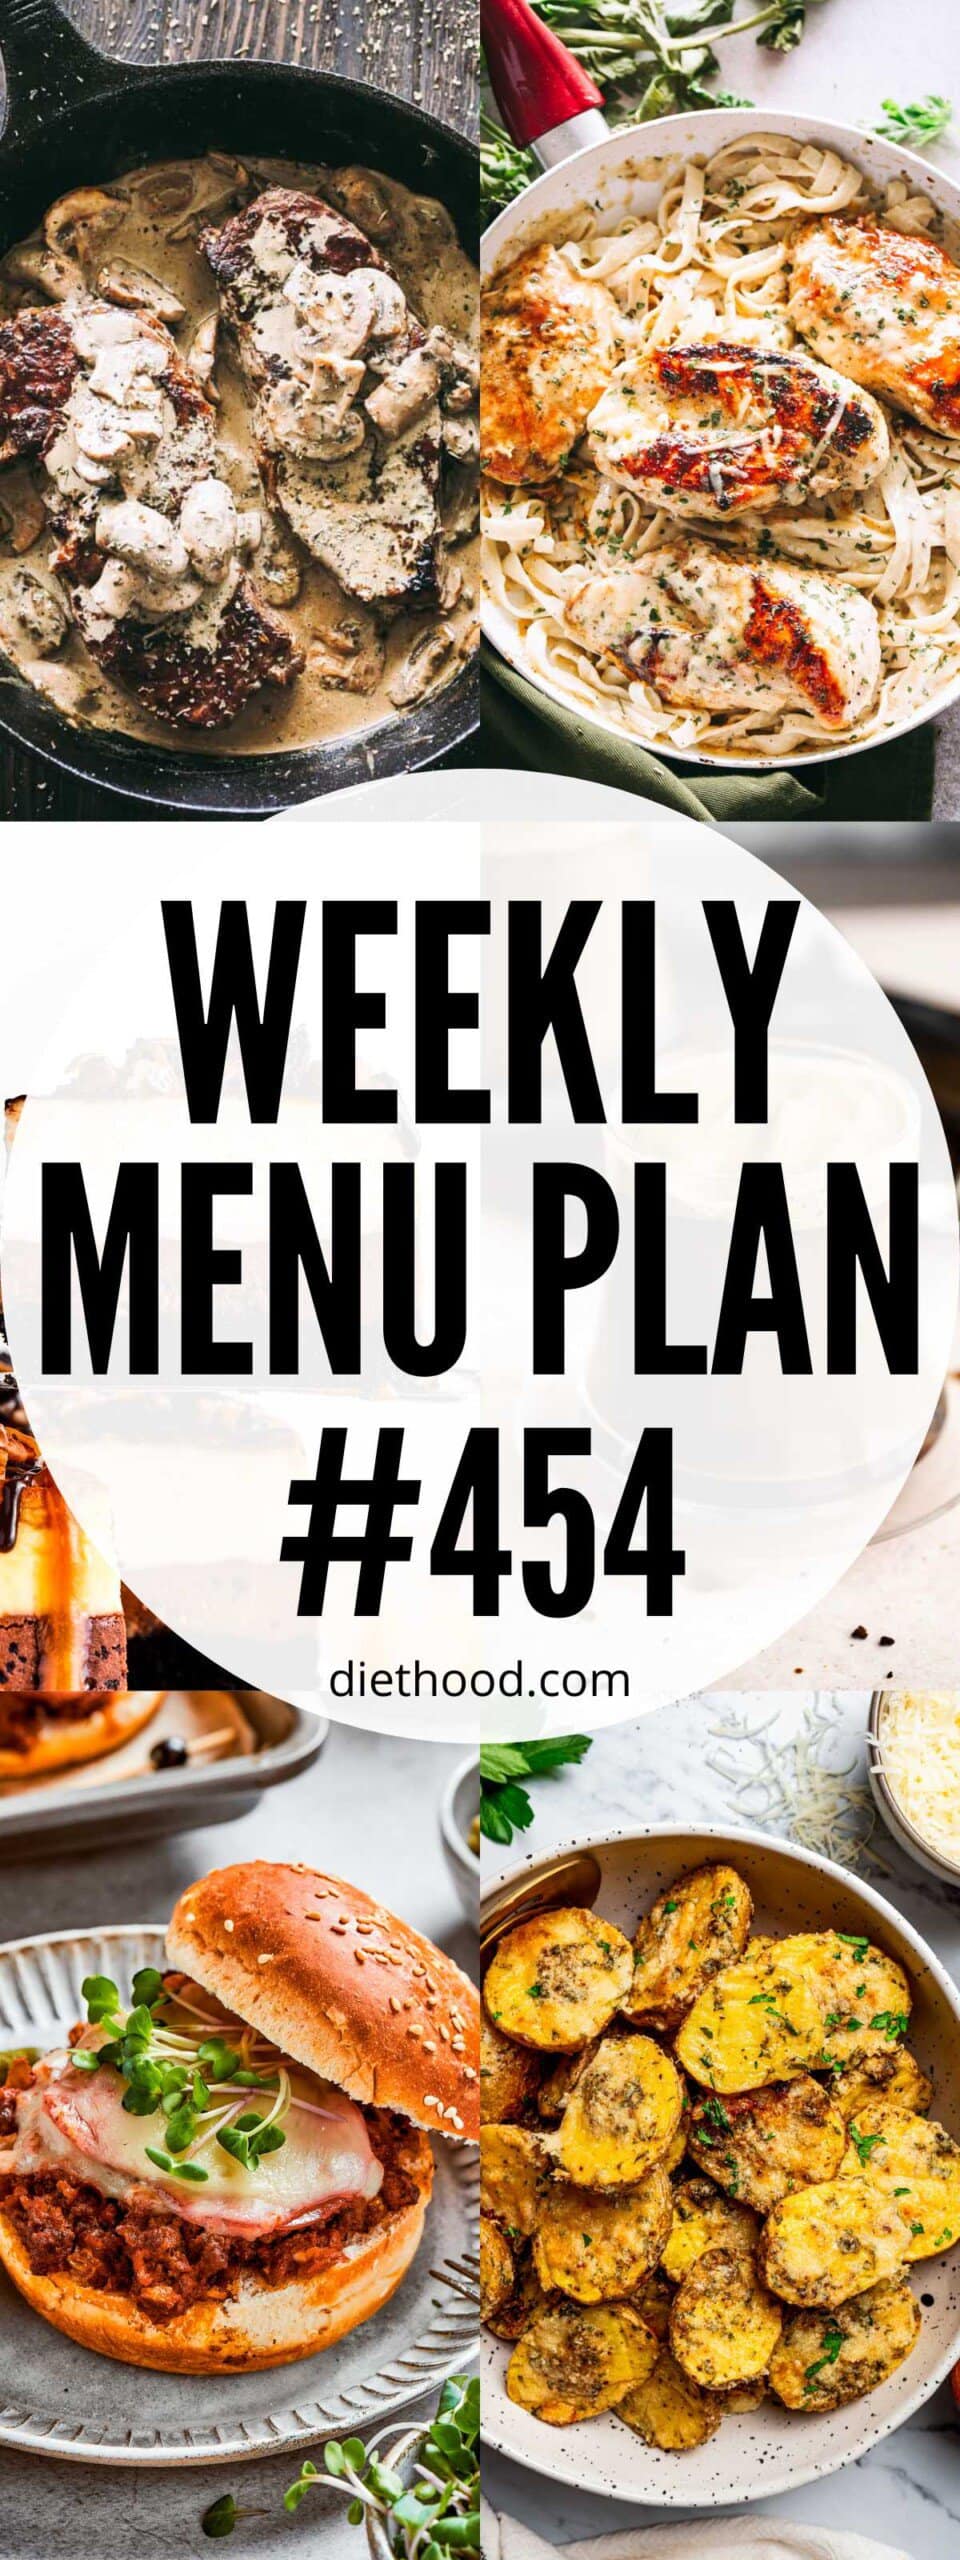 Weekly Menu Plan 454 six image collage Pinterest image.